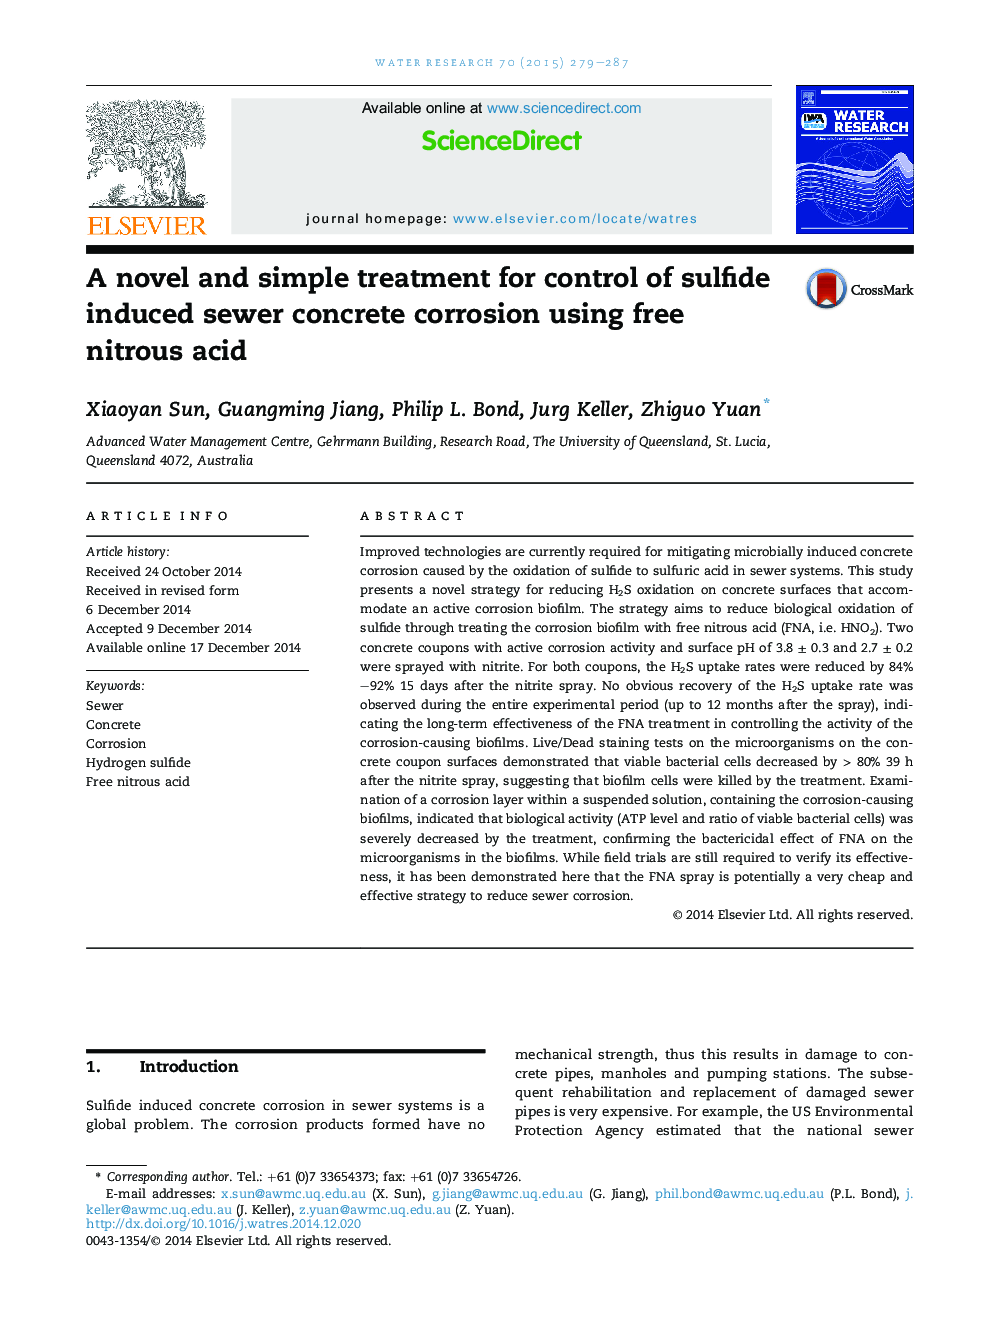 درمان جدید و ساده برای کنترل خوردگی بتن فاضلاب ناشی از سولفید با استفاده از اسید نیتریک آزاد 